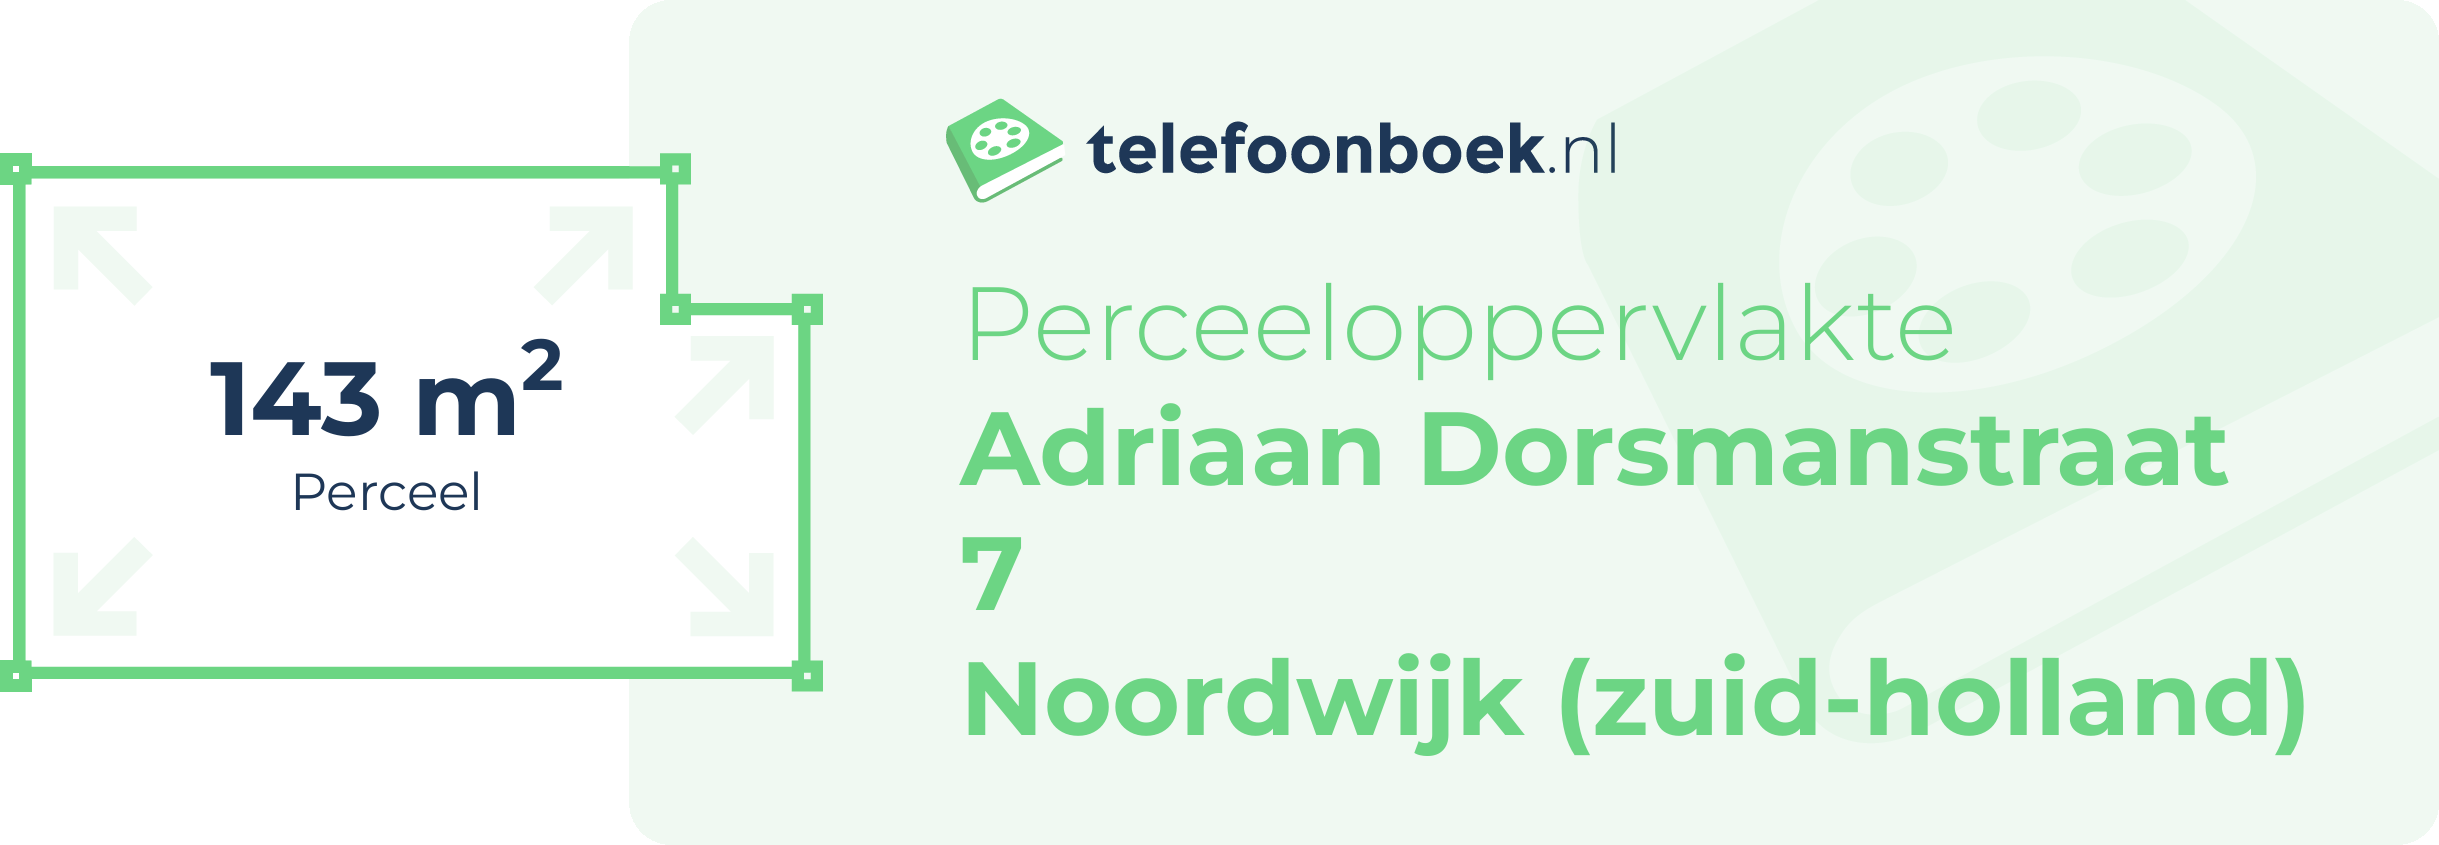 Perceeloppervlakte Adriaan Dorsmanstraat 7 Noordwijk (Zuid-Holland)